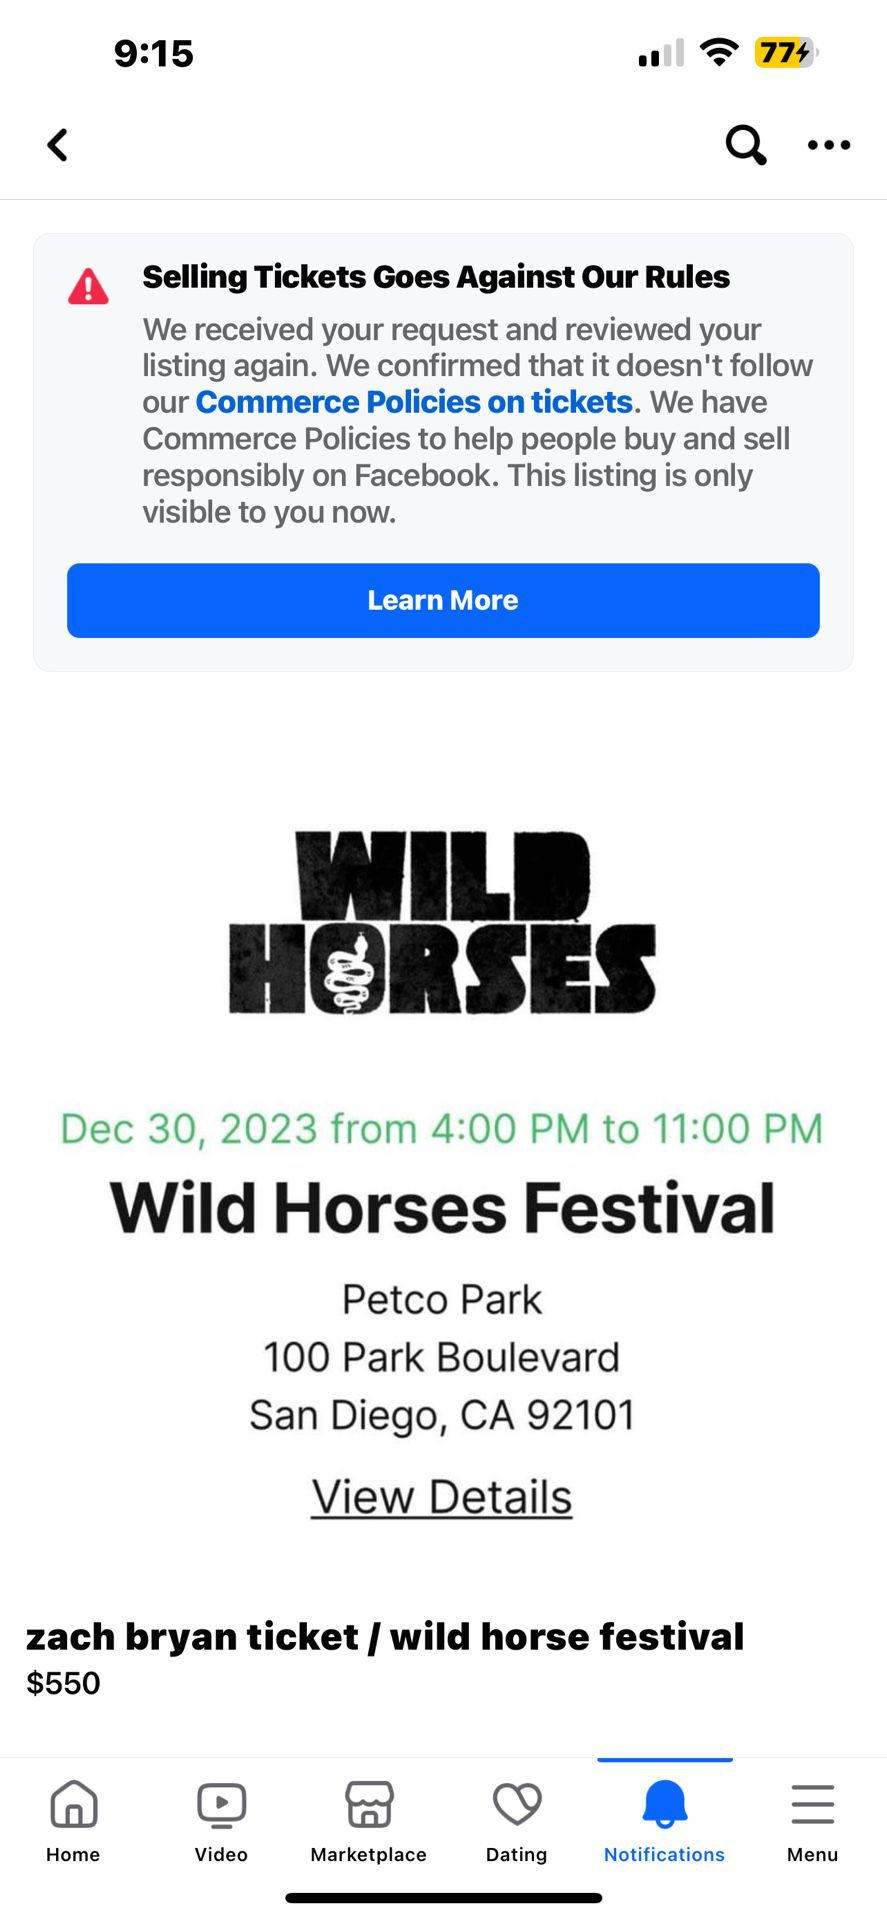 Zach Bryan Ticket / Wild Horse Fest